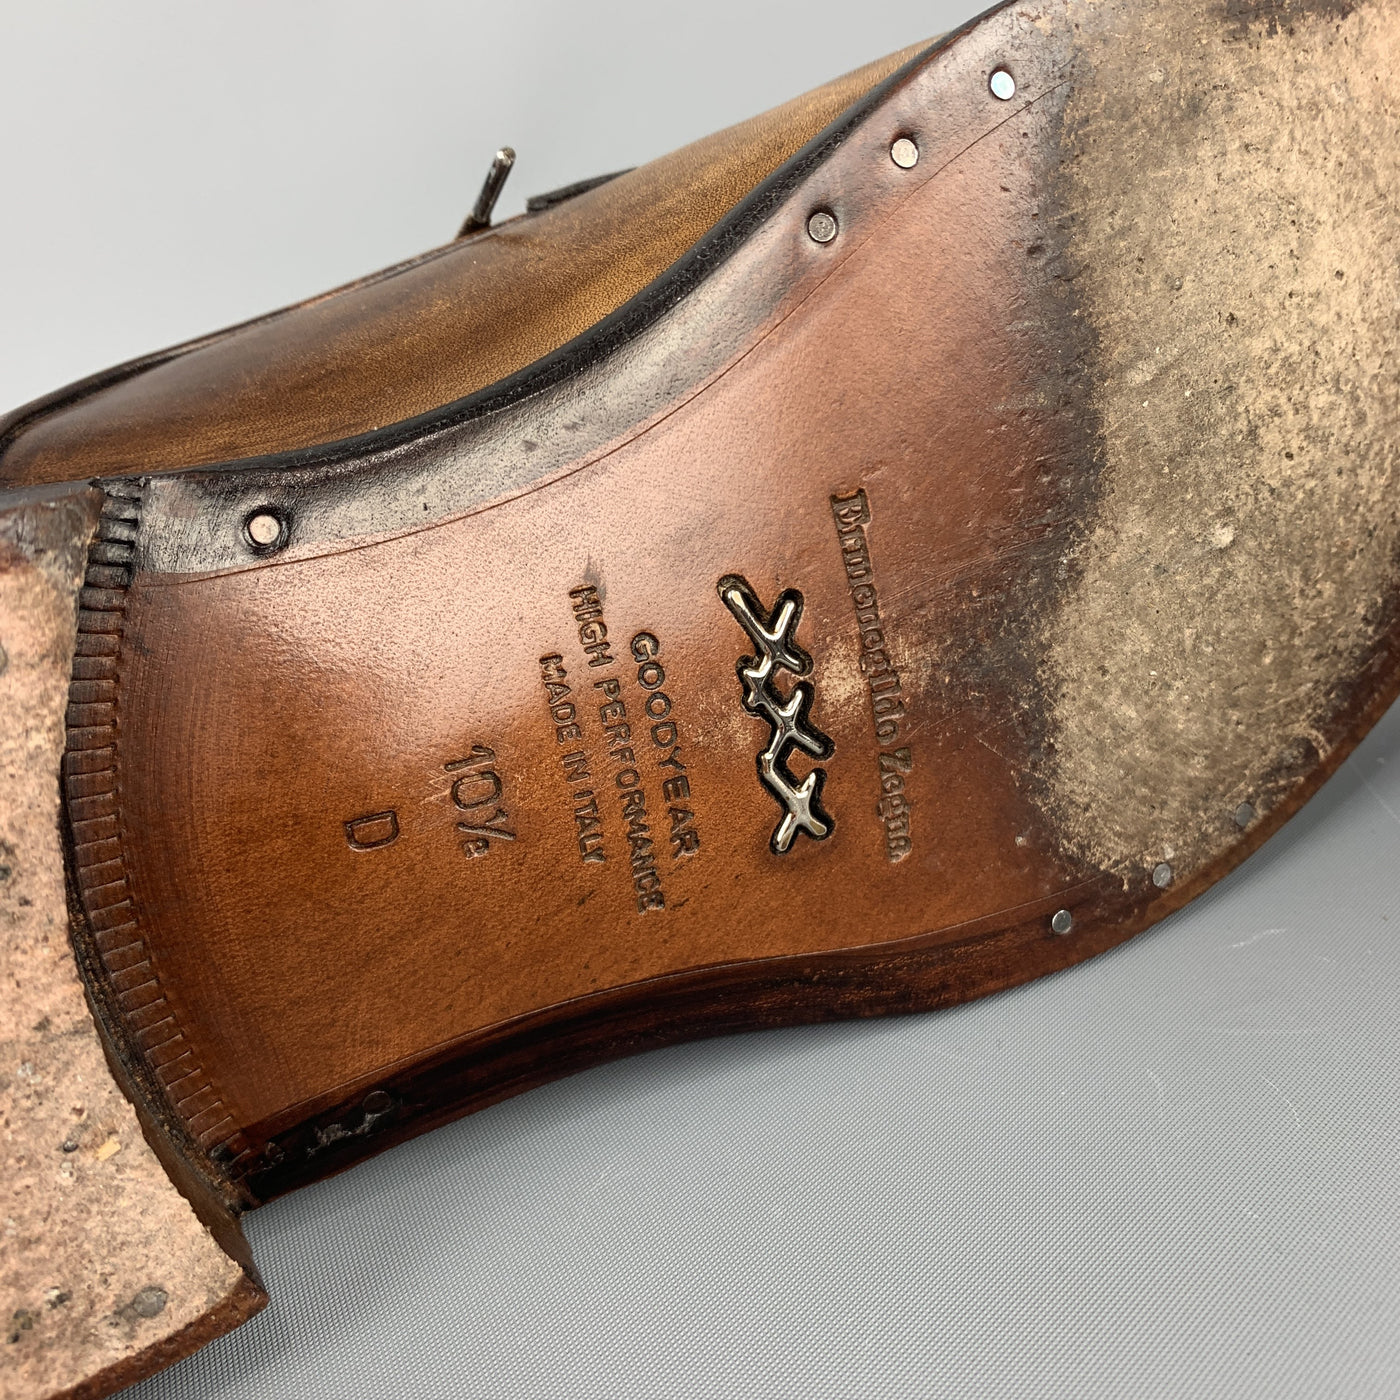 ERMENEGILDO ZEGNA Size 10.5 Brown Antique Effect Leather Lace Up Dress Shoes